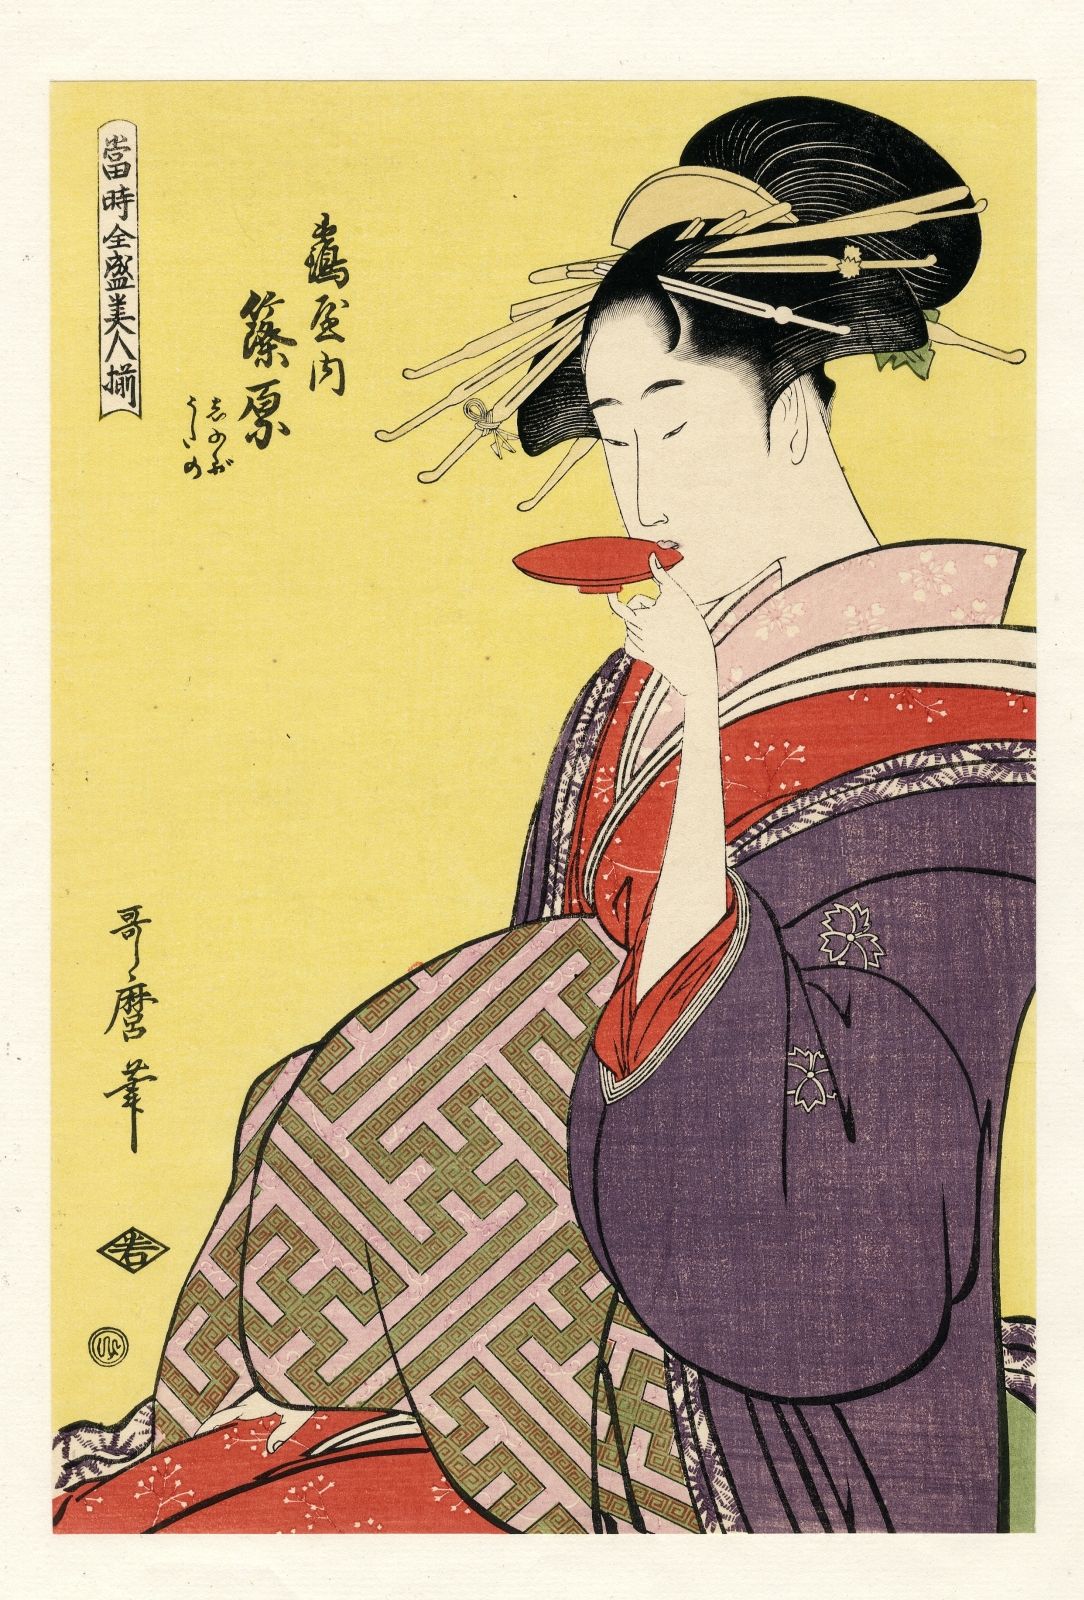 Goyo und Kiyokata Nach Utamaro (28,2 x 19,2 cm), 1920 Aus dem Album "Ukiyo Yamat&hellip;